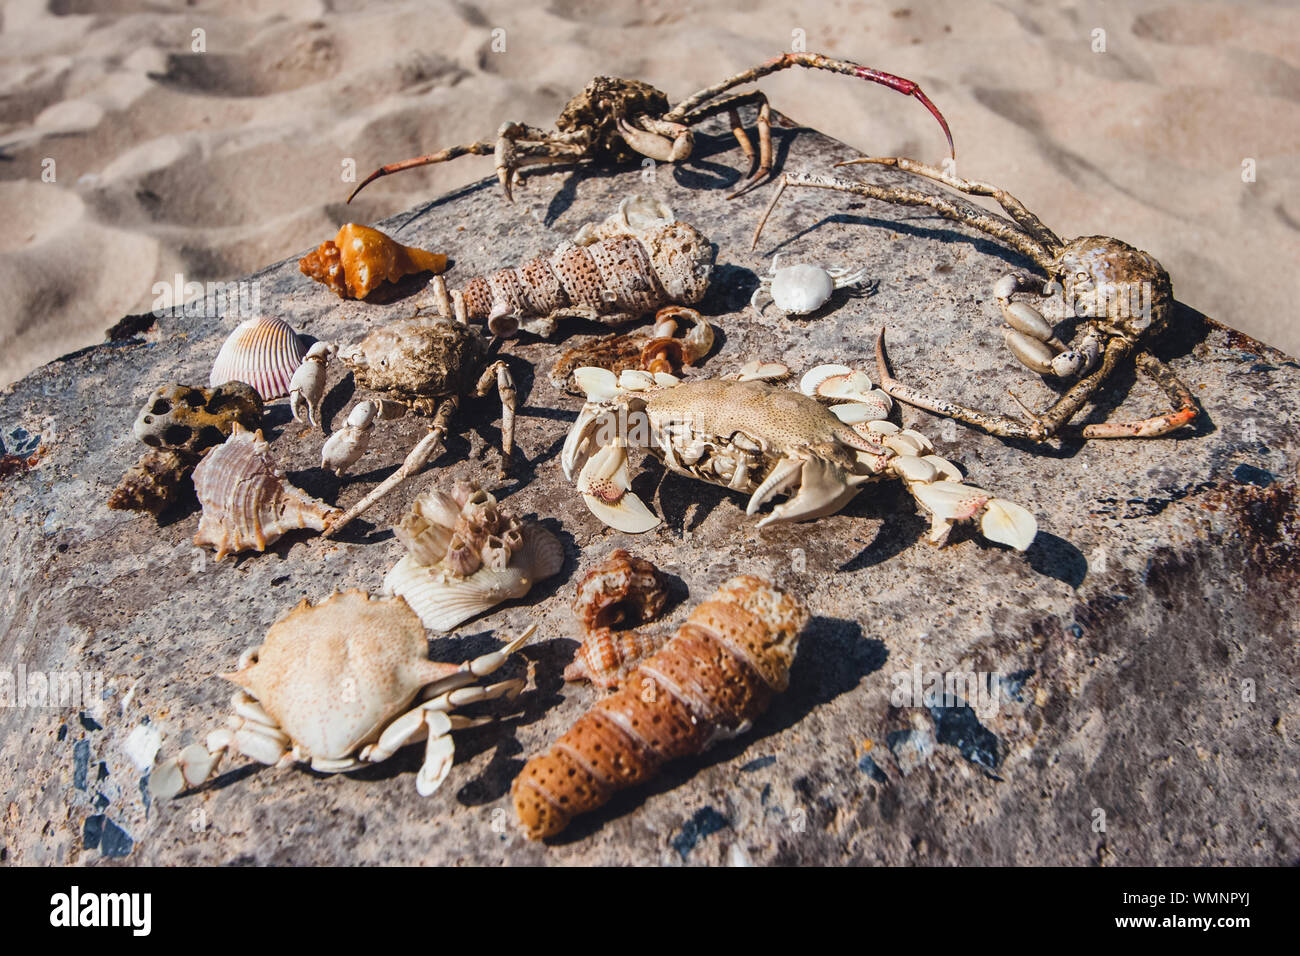 Strand findet. Trocken, Krabben, Muscheln, Meer Kreaturen, Meeresfrüchte am Strand gesammelt, Meeresfrüchte liegen auf einem Stein auf dem Sand. Krallen, Klauen, getrocknete Haut. Stockfoto